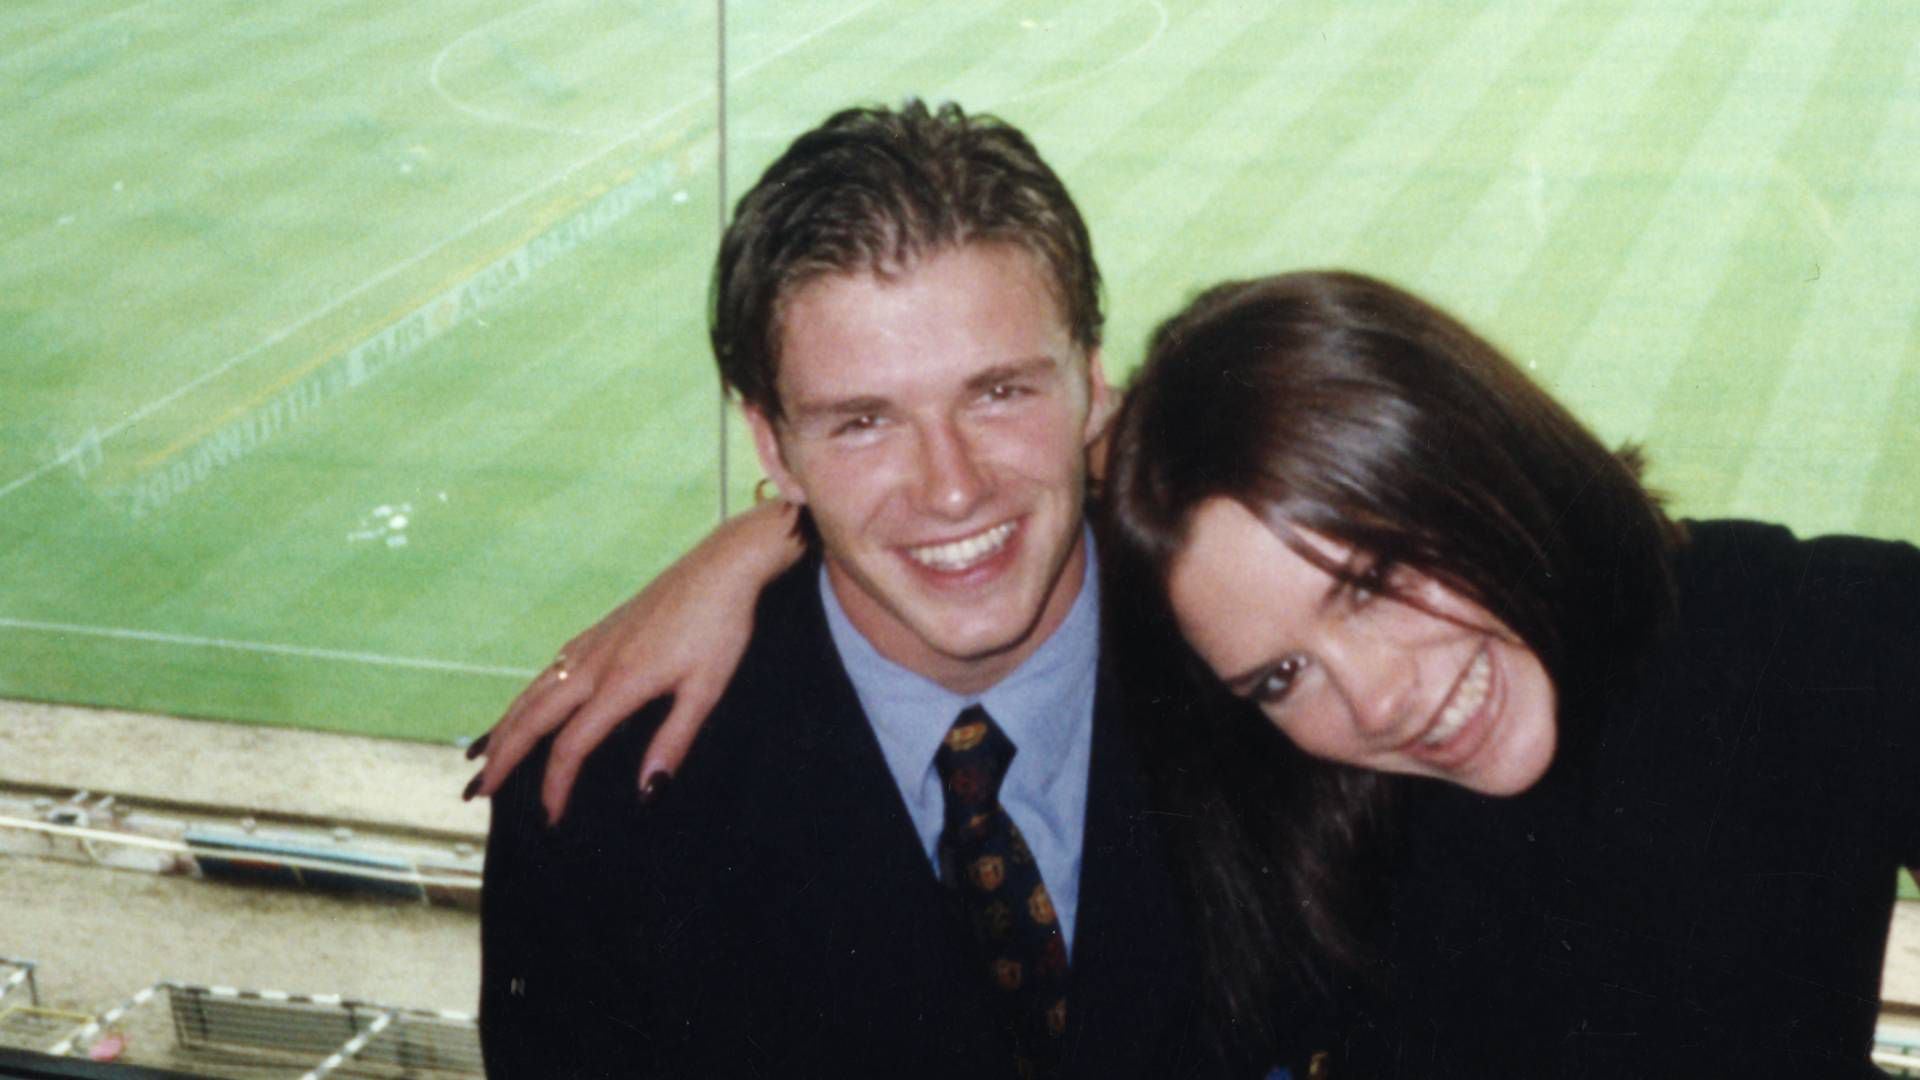 David y Victoria Beckham en una foto antigua. (Créditos: Netflix)